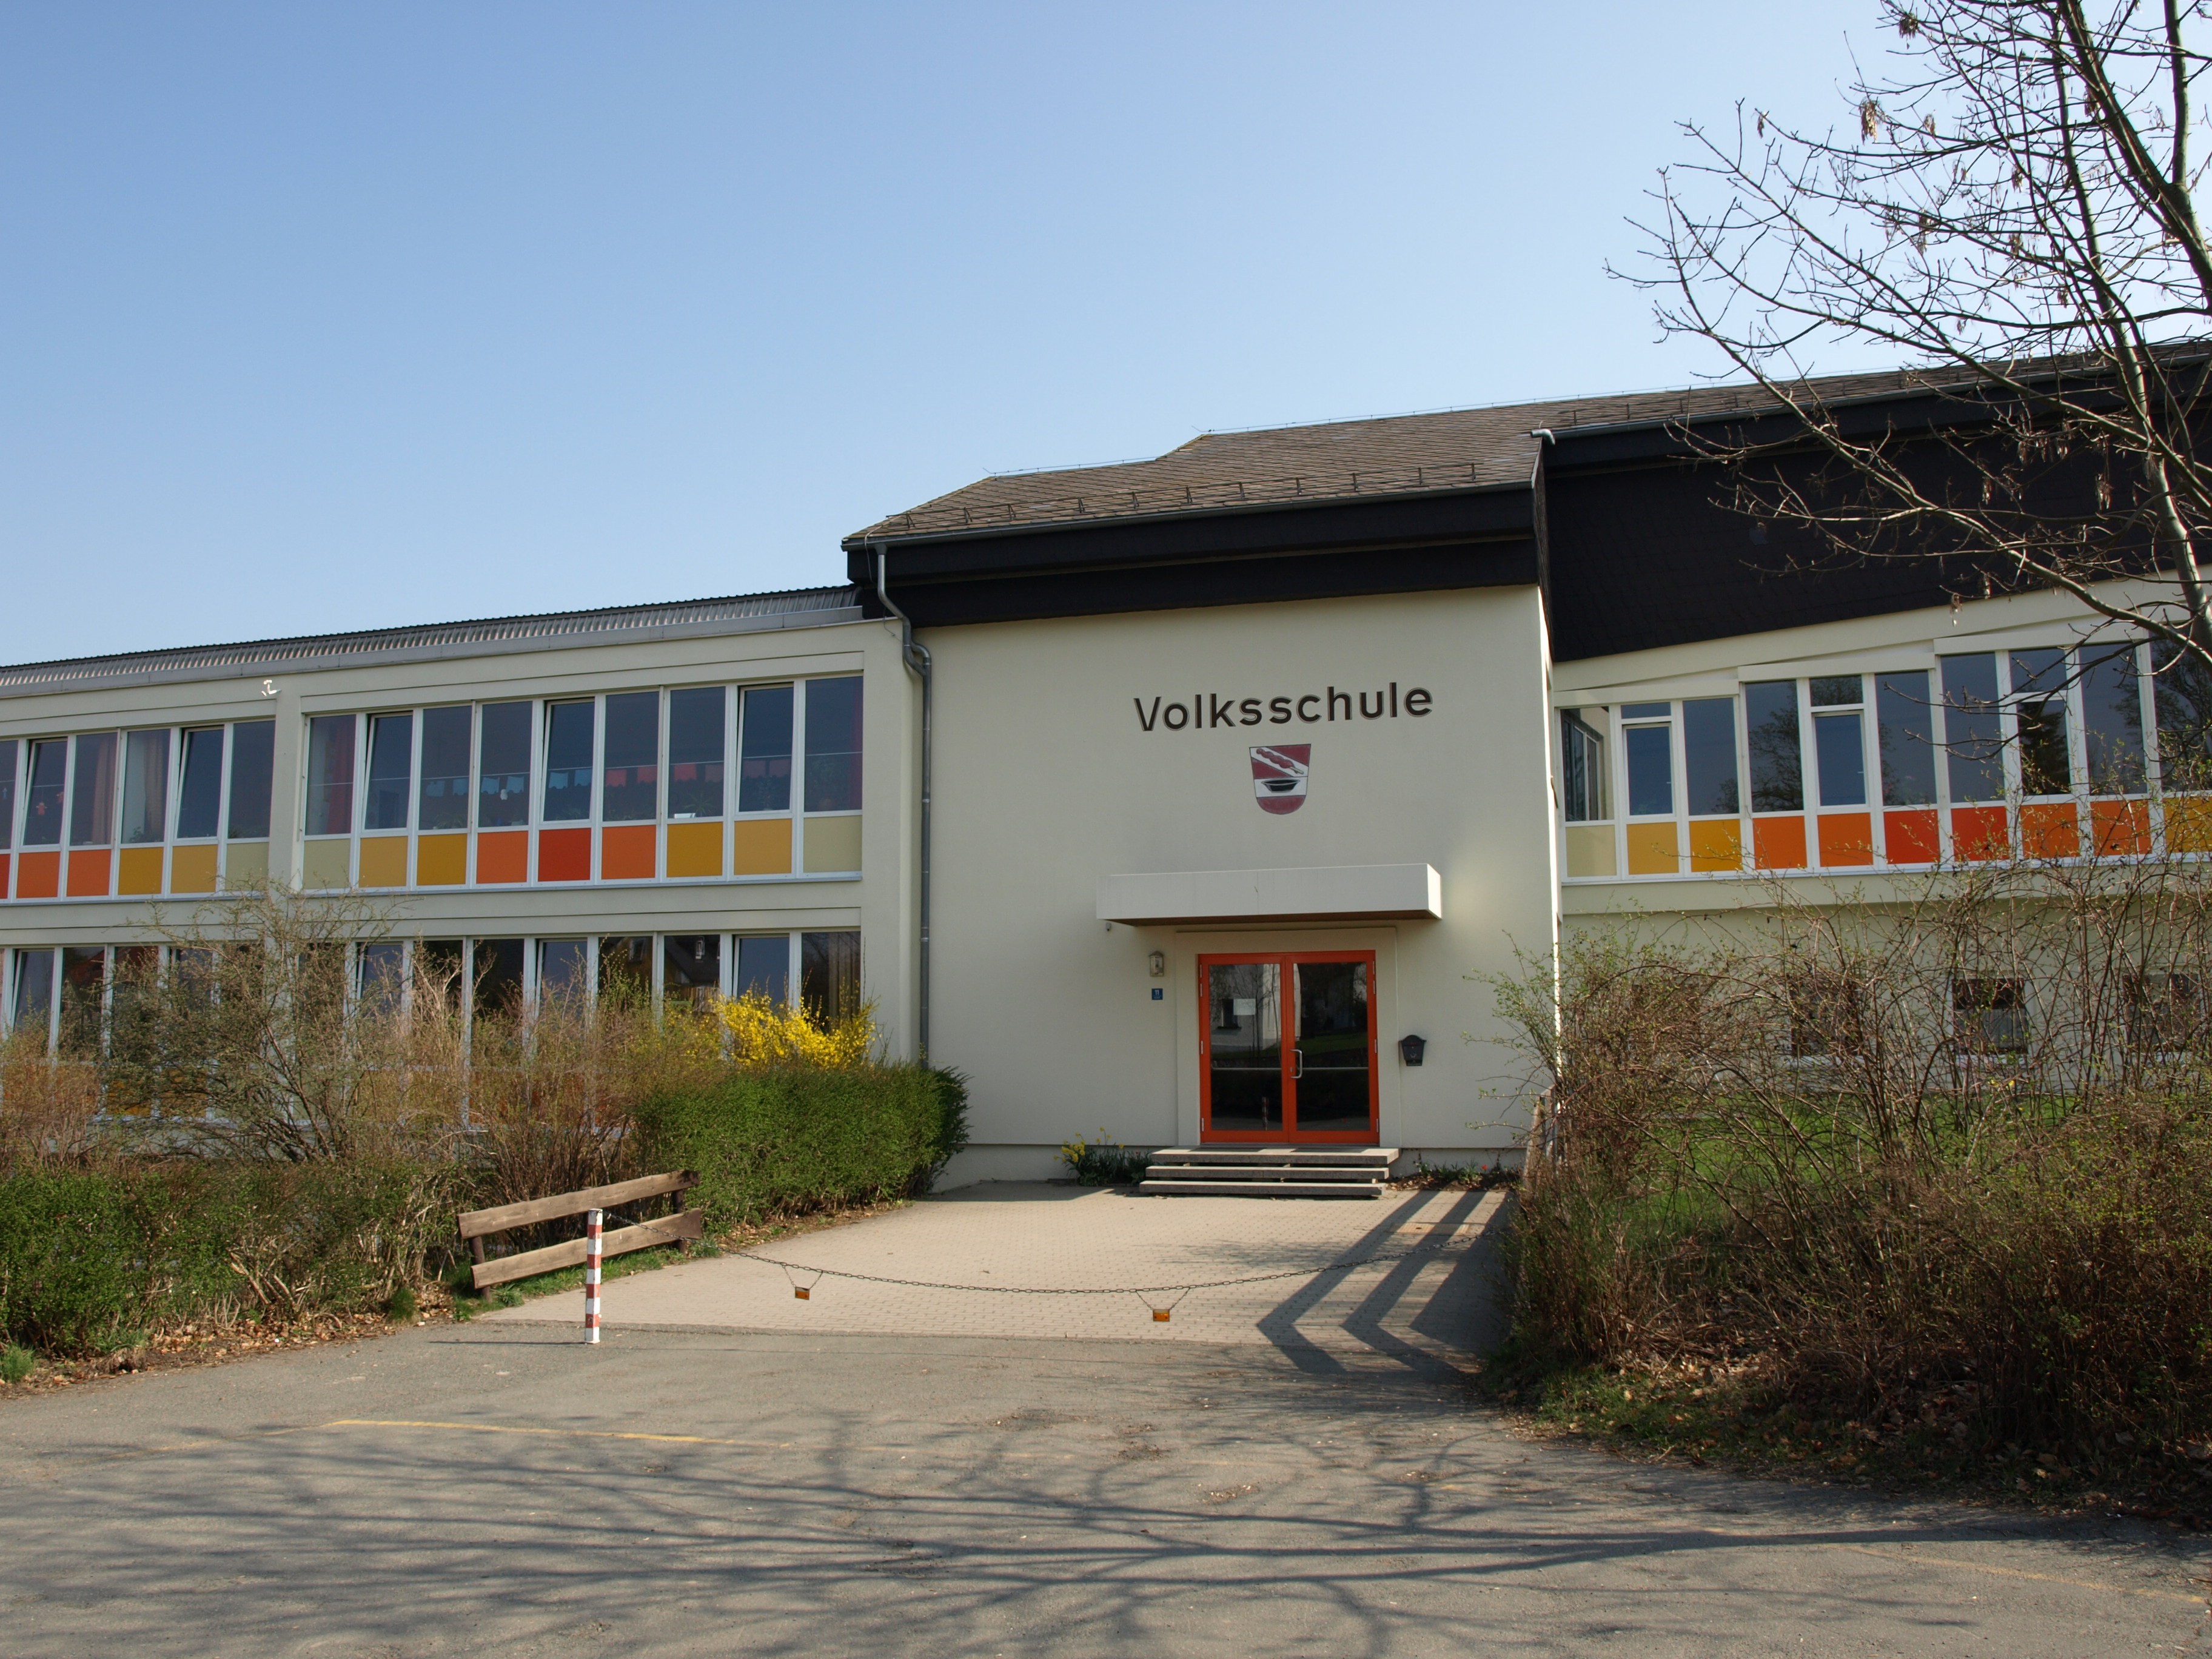 The school of Regnitzlosau.